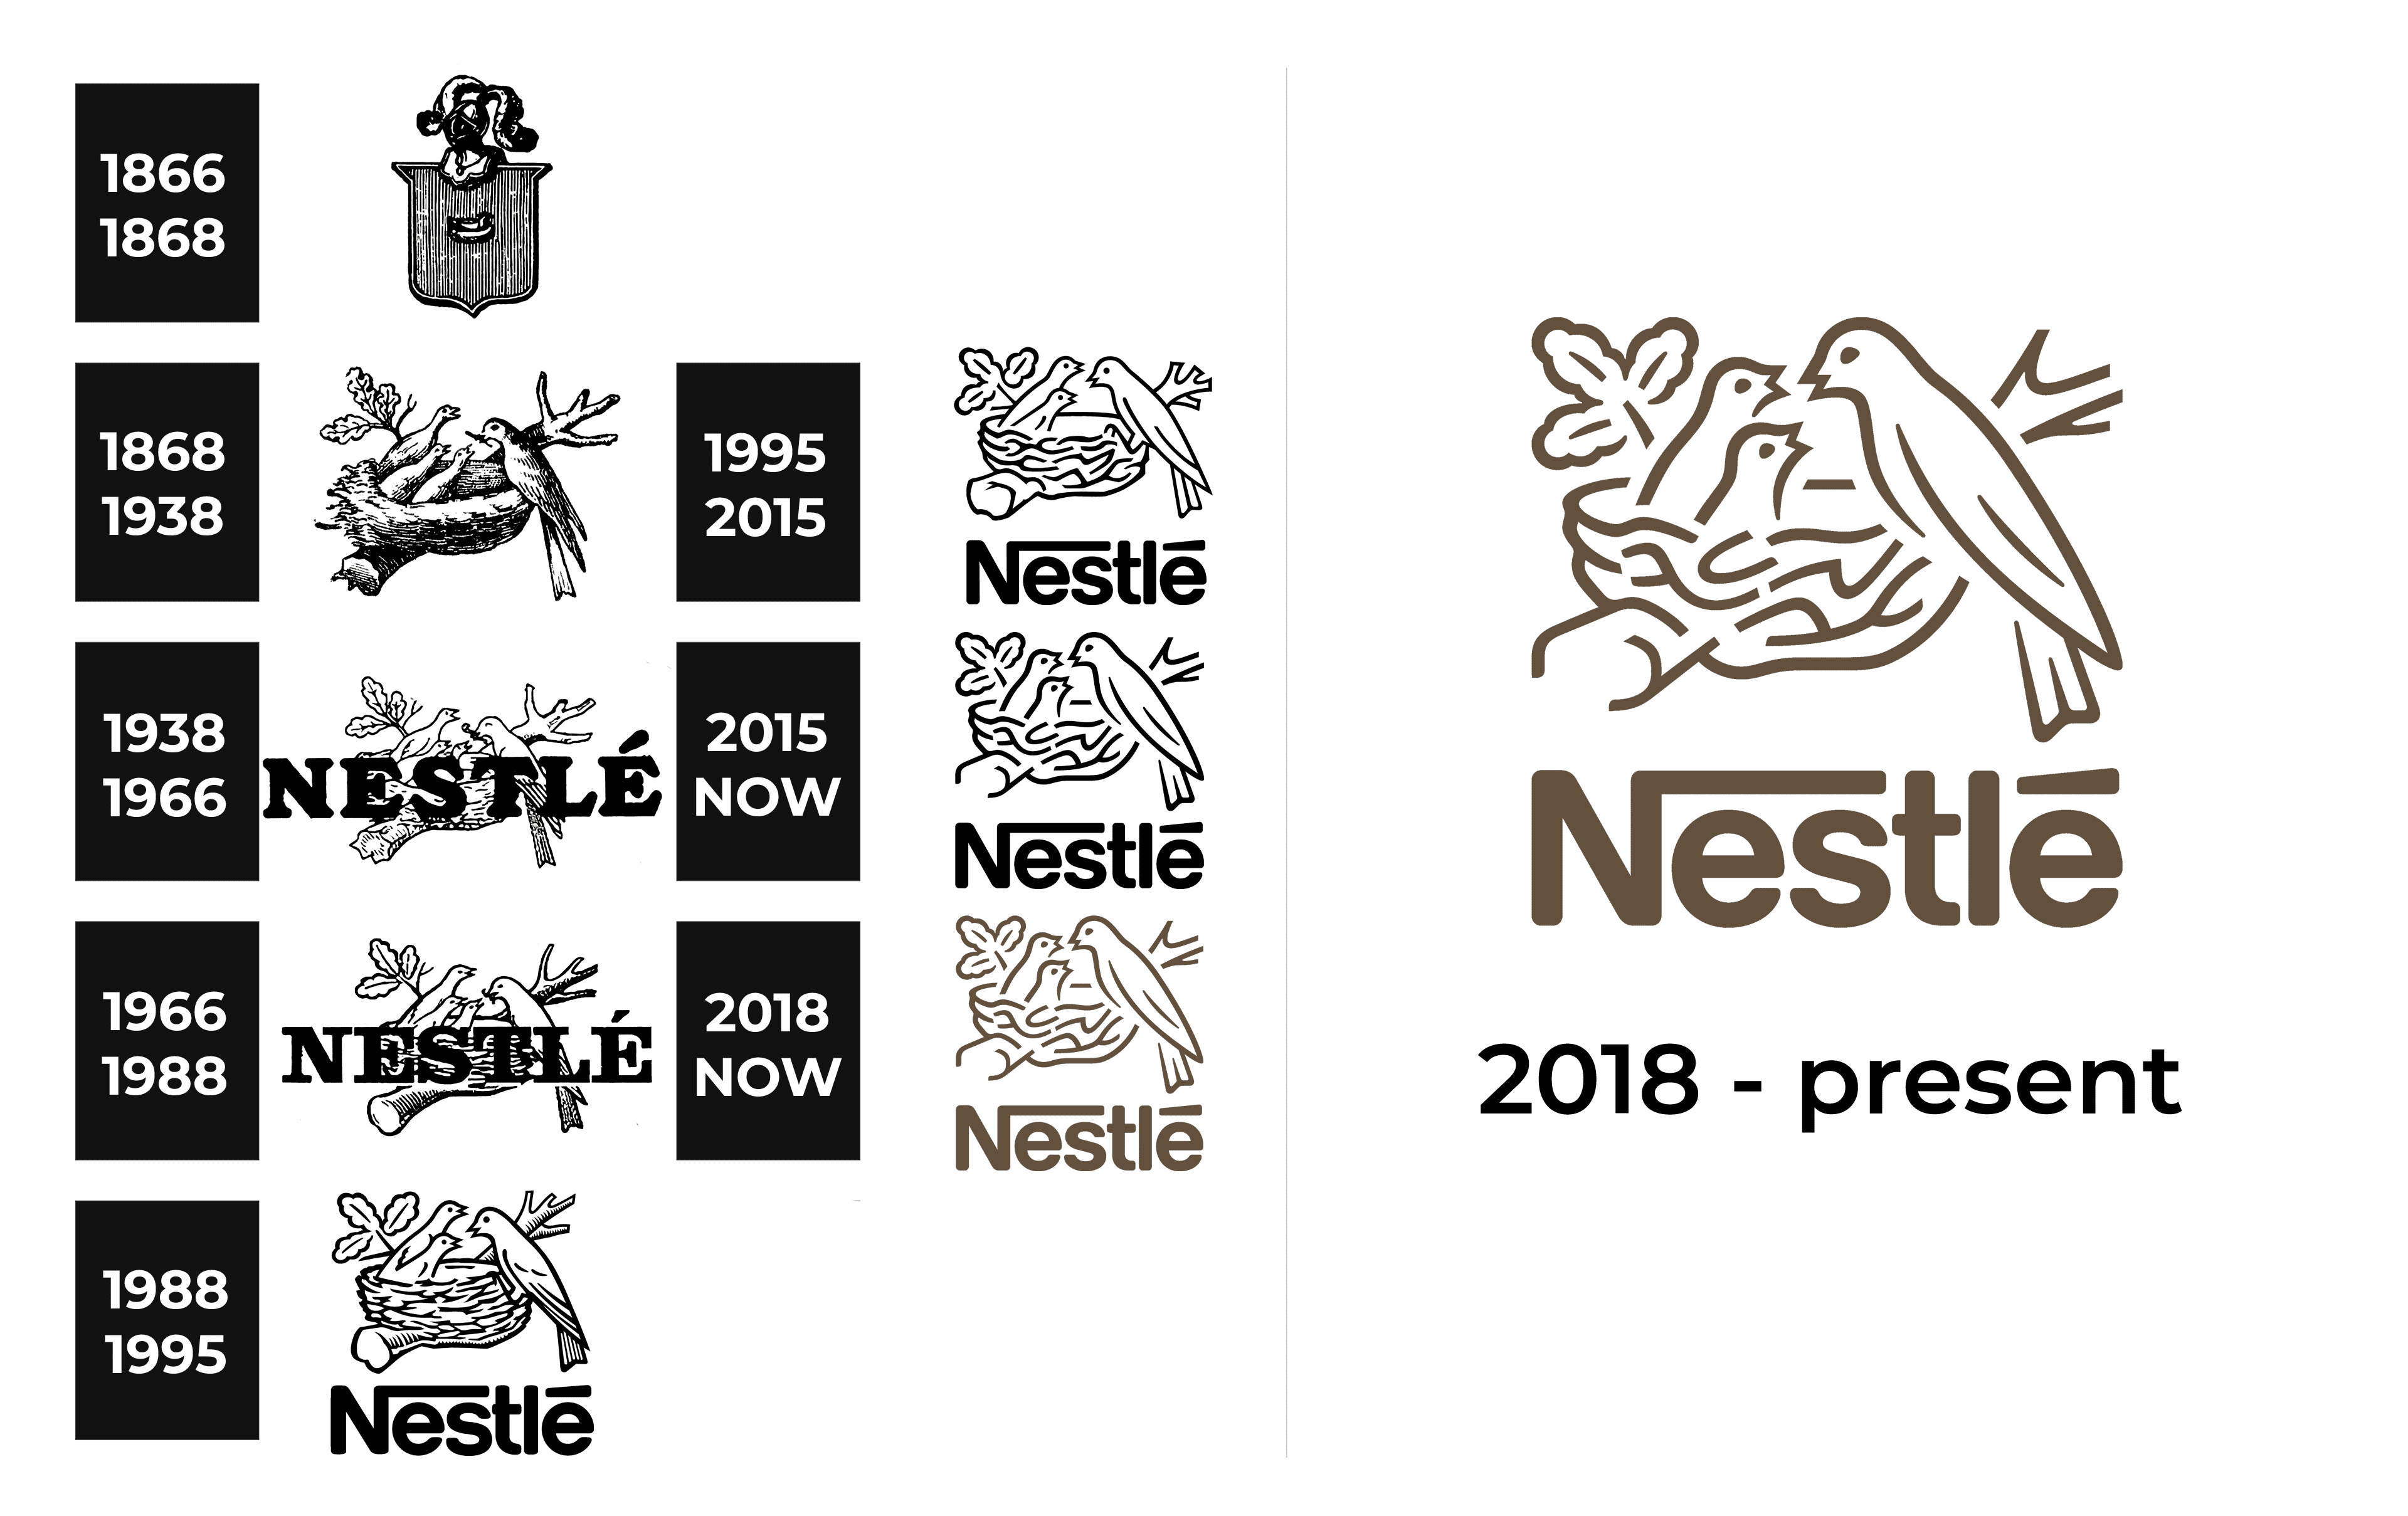 nestle logo images